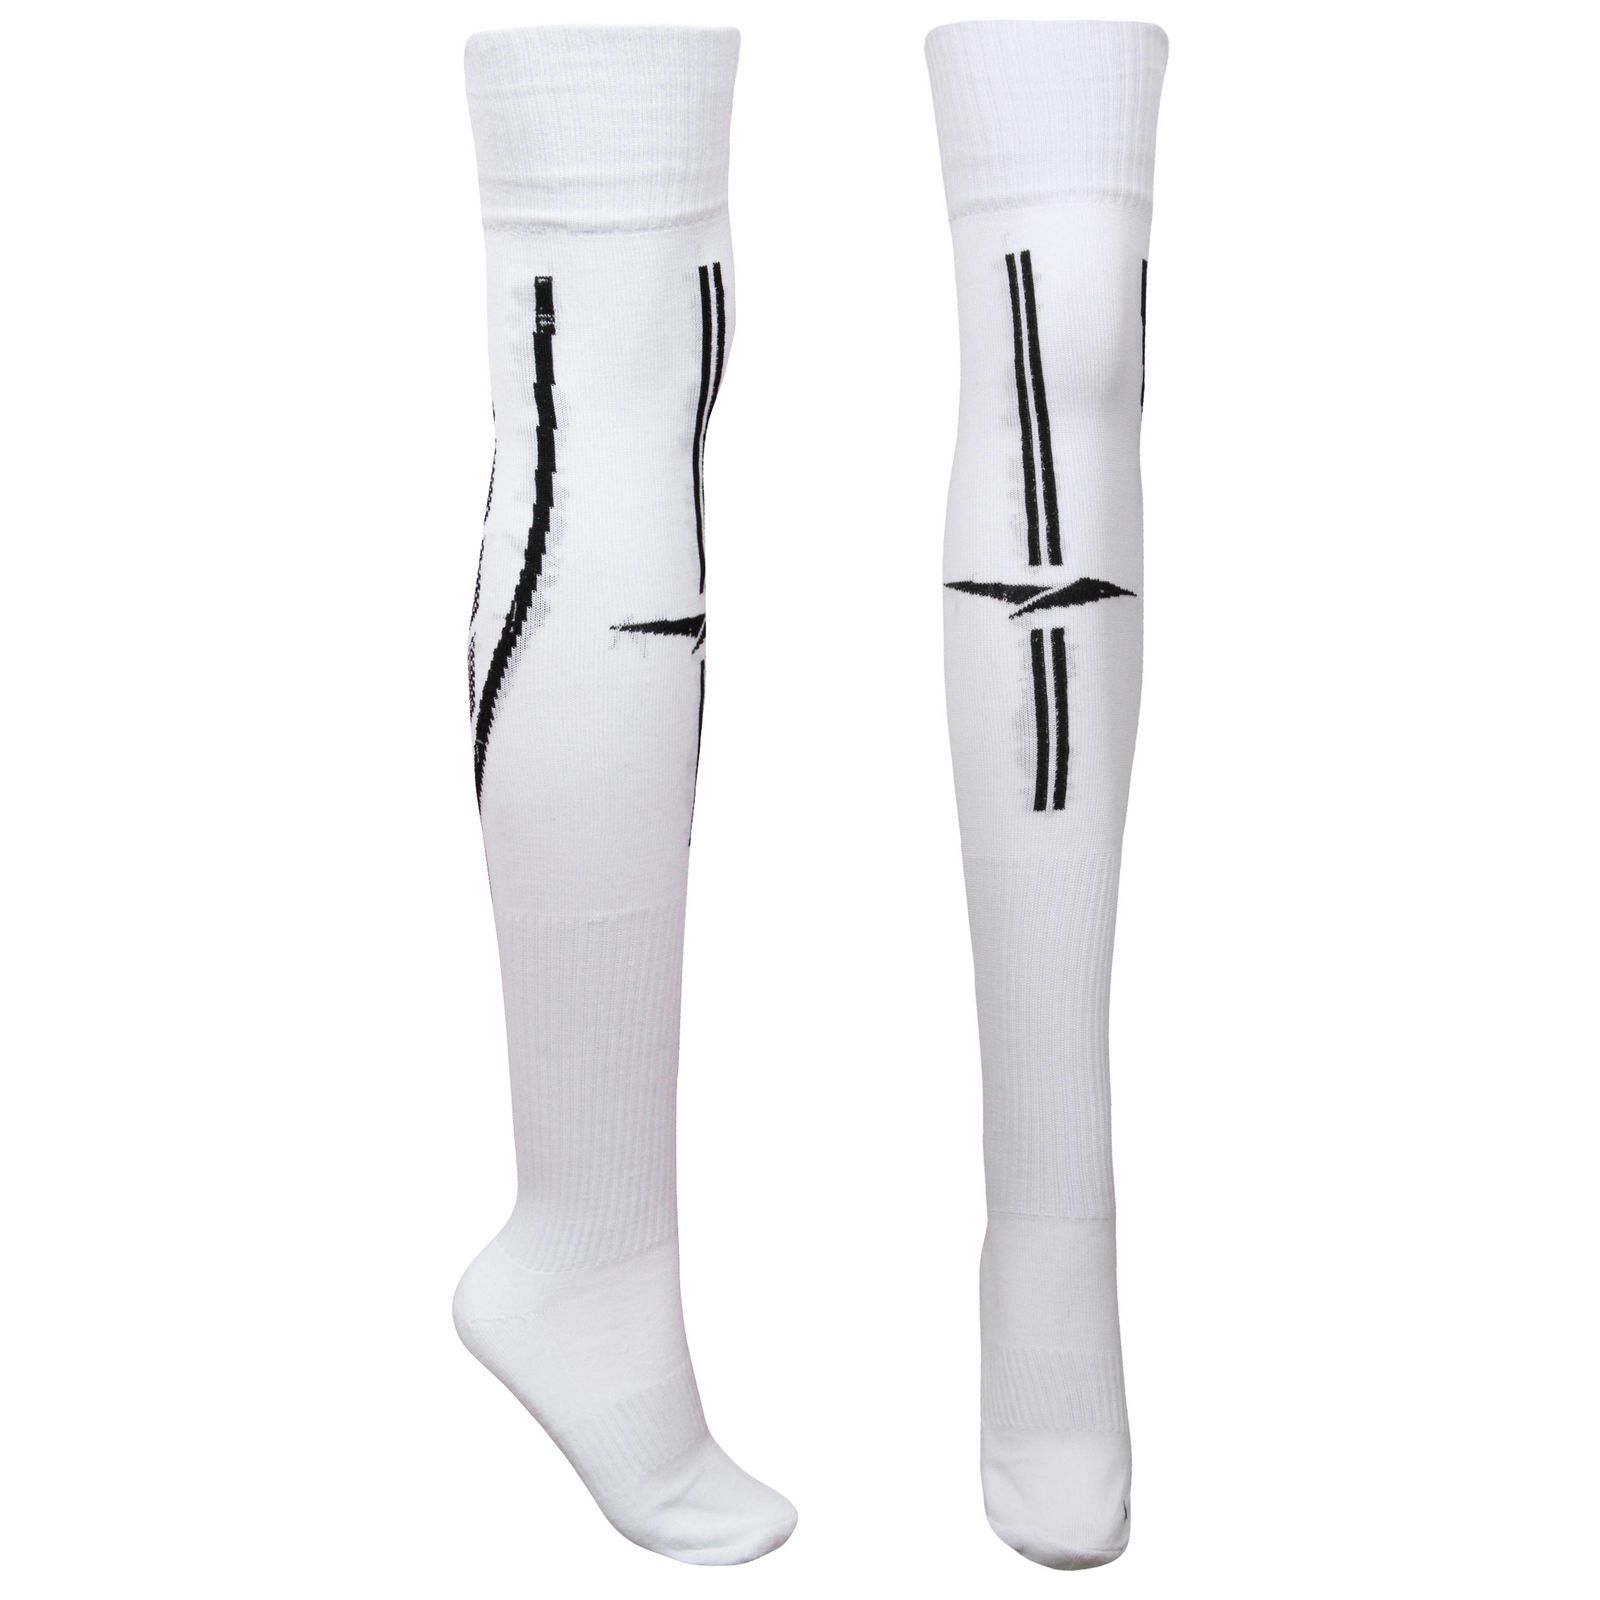 جوراب ورزشی ساق بلند مردانه ماییلدا مدل کف حوله ای کد 4187 رنگ سفید